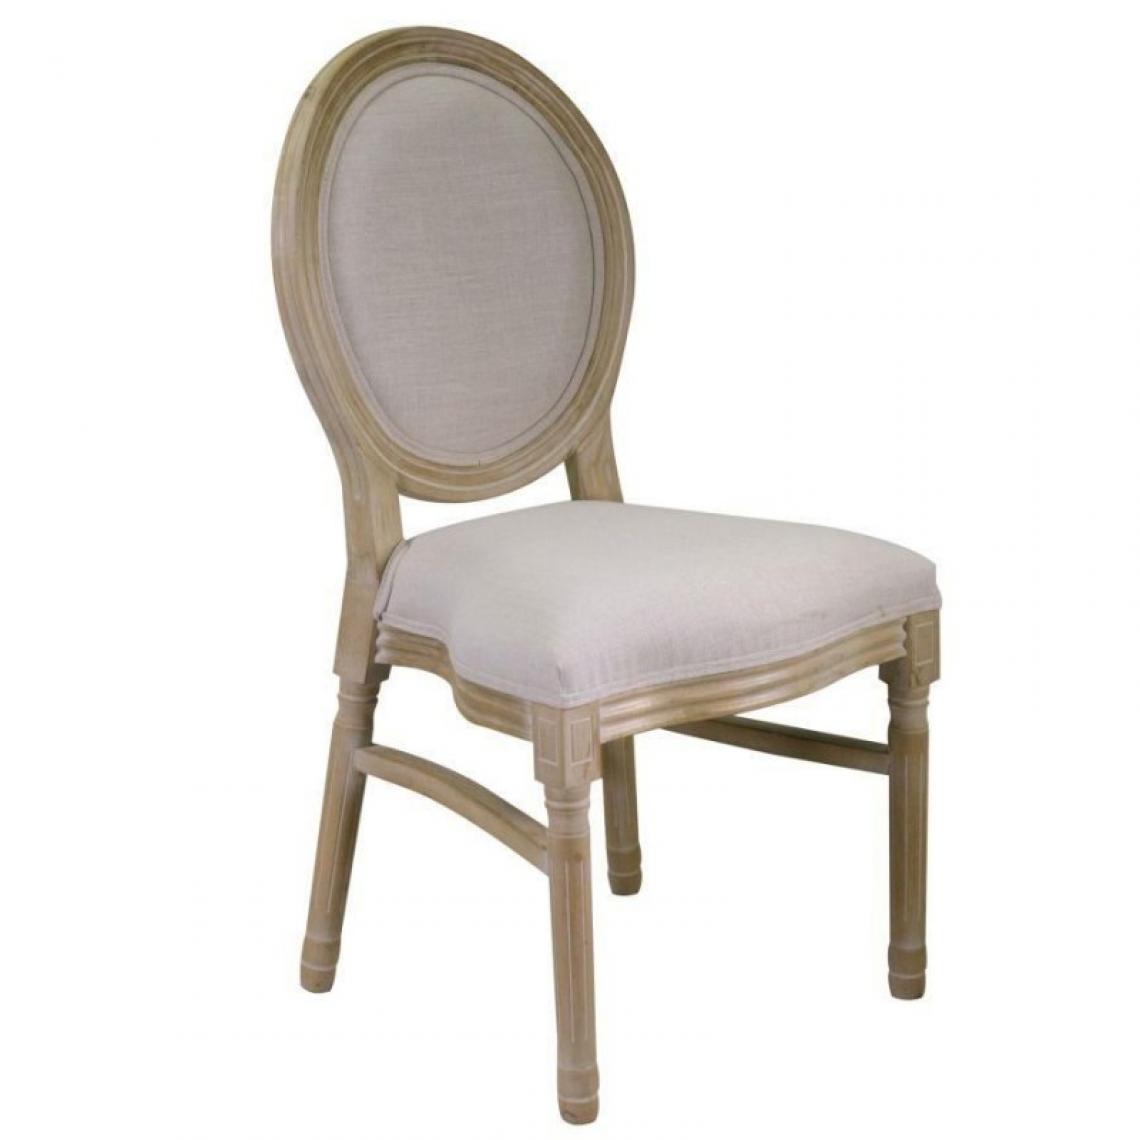 Webmarketpoint - Chaise en bois rembourrée avec assise démontée 50x51x96h cm - Chaises